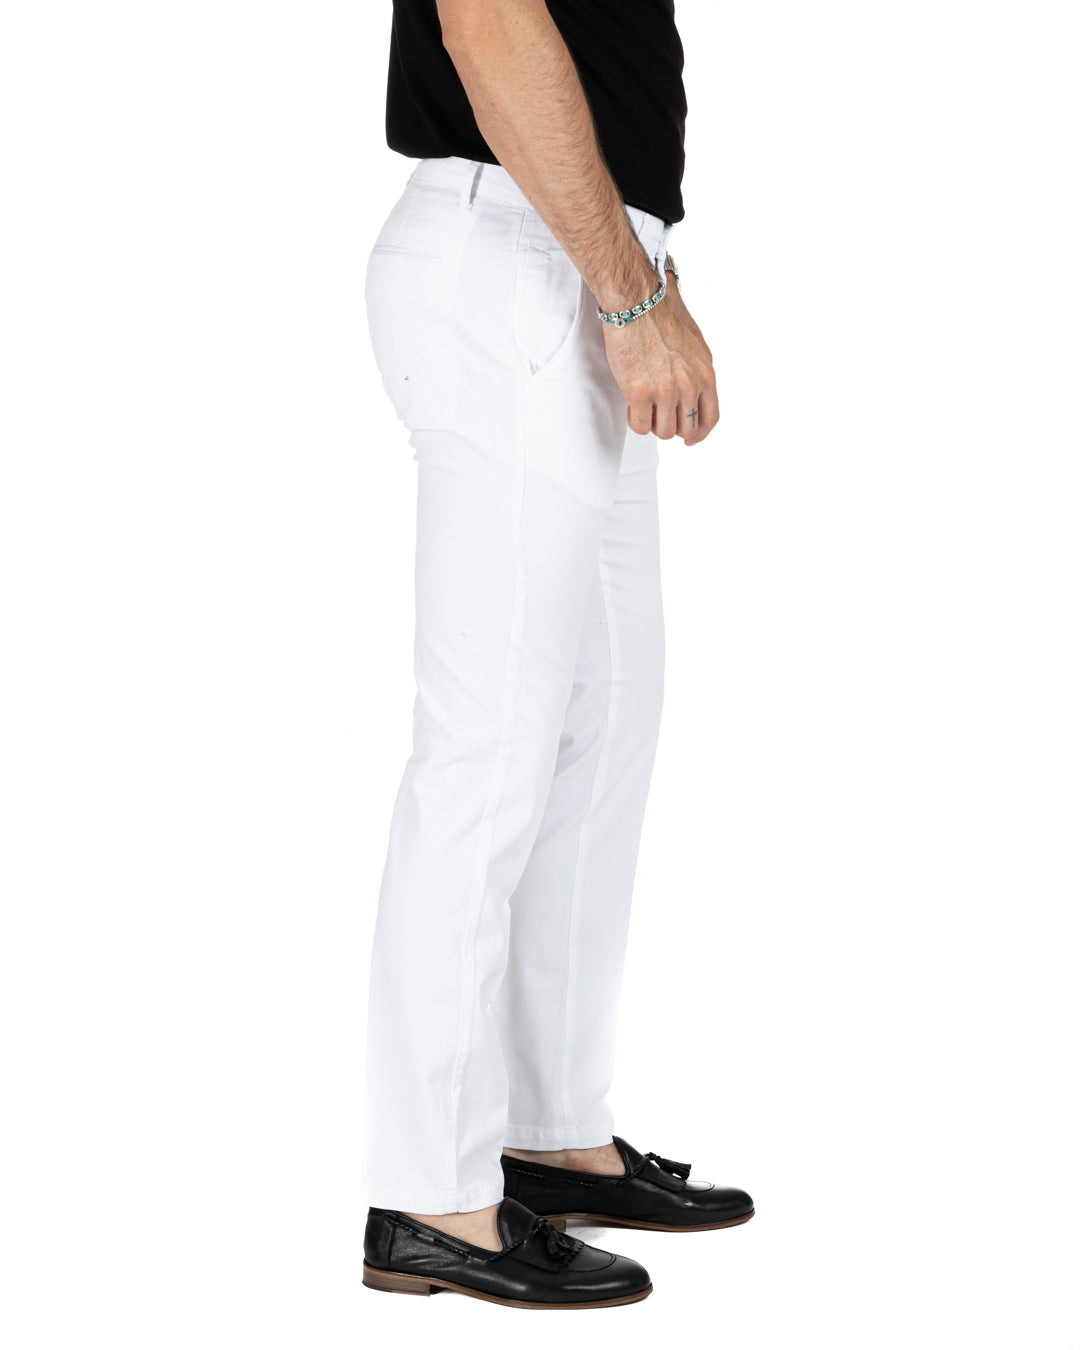 Bill - pantalone armaturato bianco